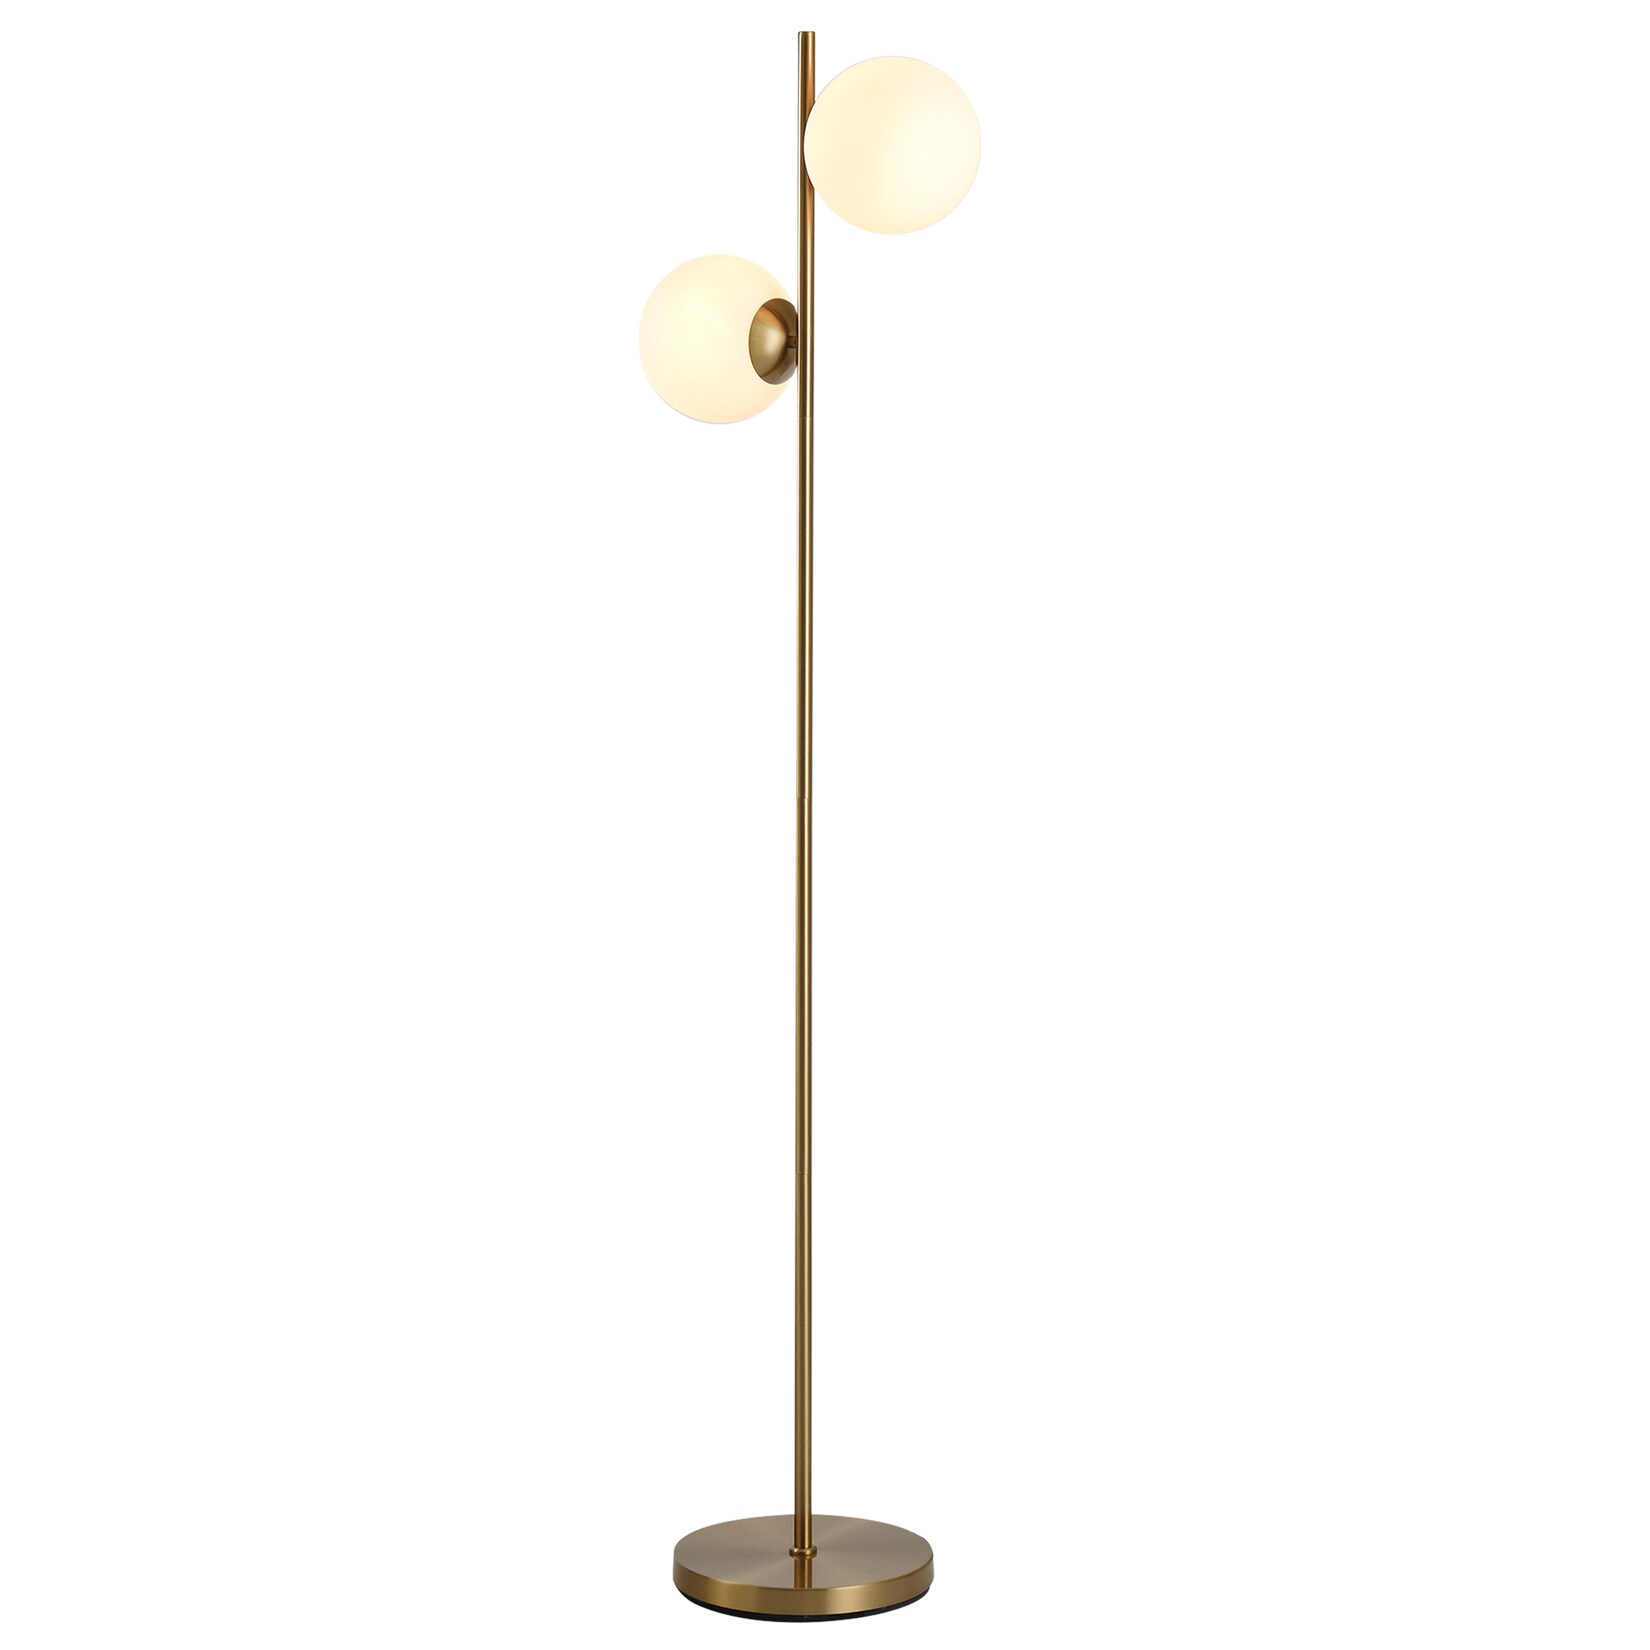 HOMCOM Stehlampe mit 2 Lampenschirmen gold, weiß 28 x 165 cm (ØxH)